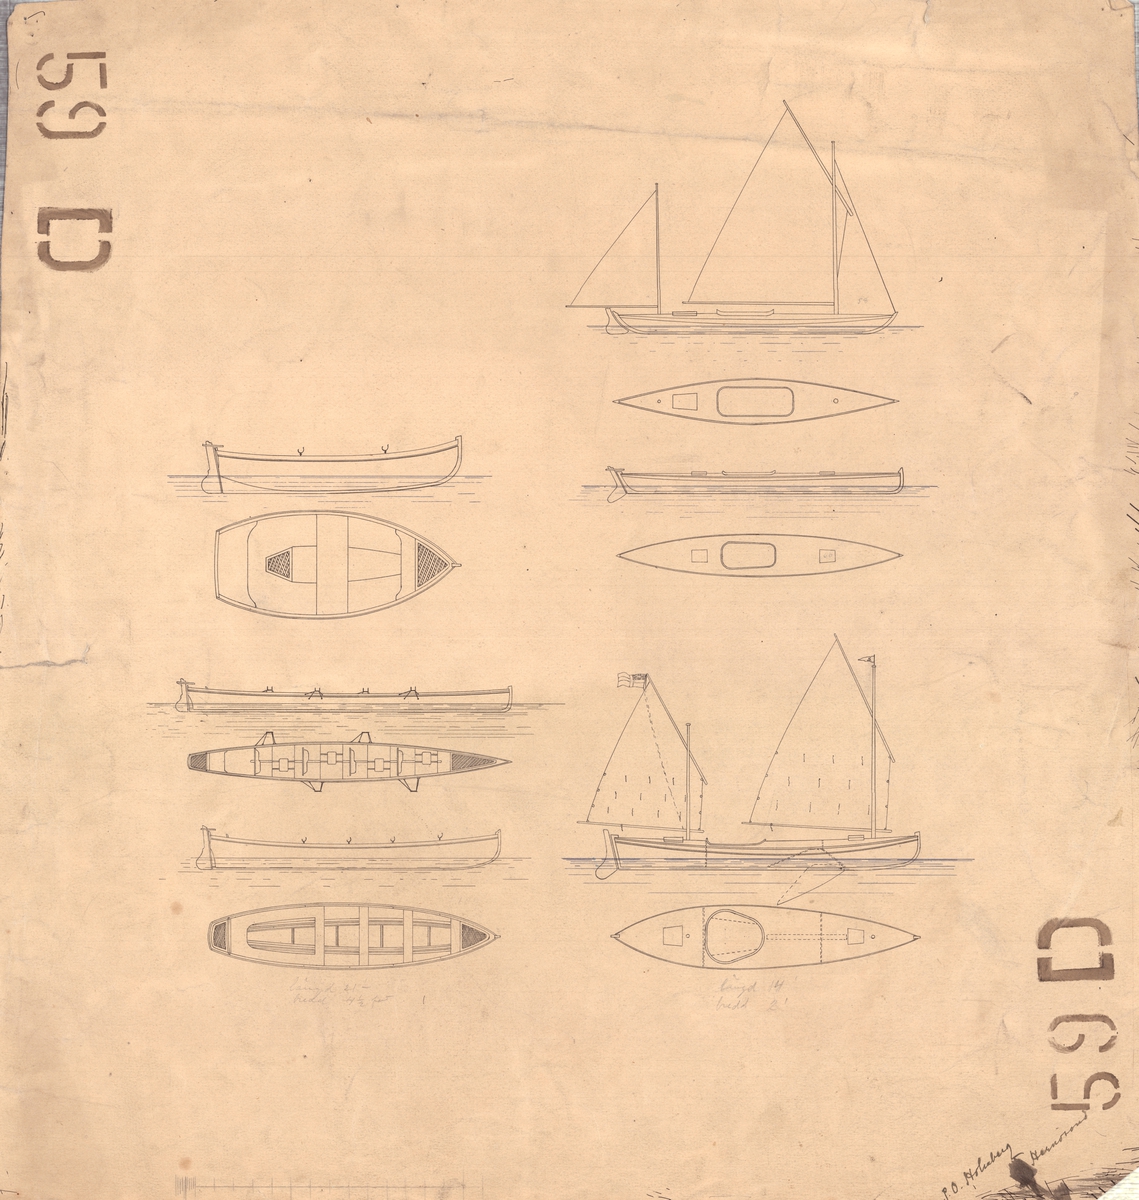 Ritning till olika båttyper avbildade på samma papper. Roddbåt med två årpar, roddbåt med fyra årpar, två olika slags tvåmastade segelkanoter samt en enkelårsbåt (fyra).
Plan och profilritningar